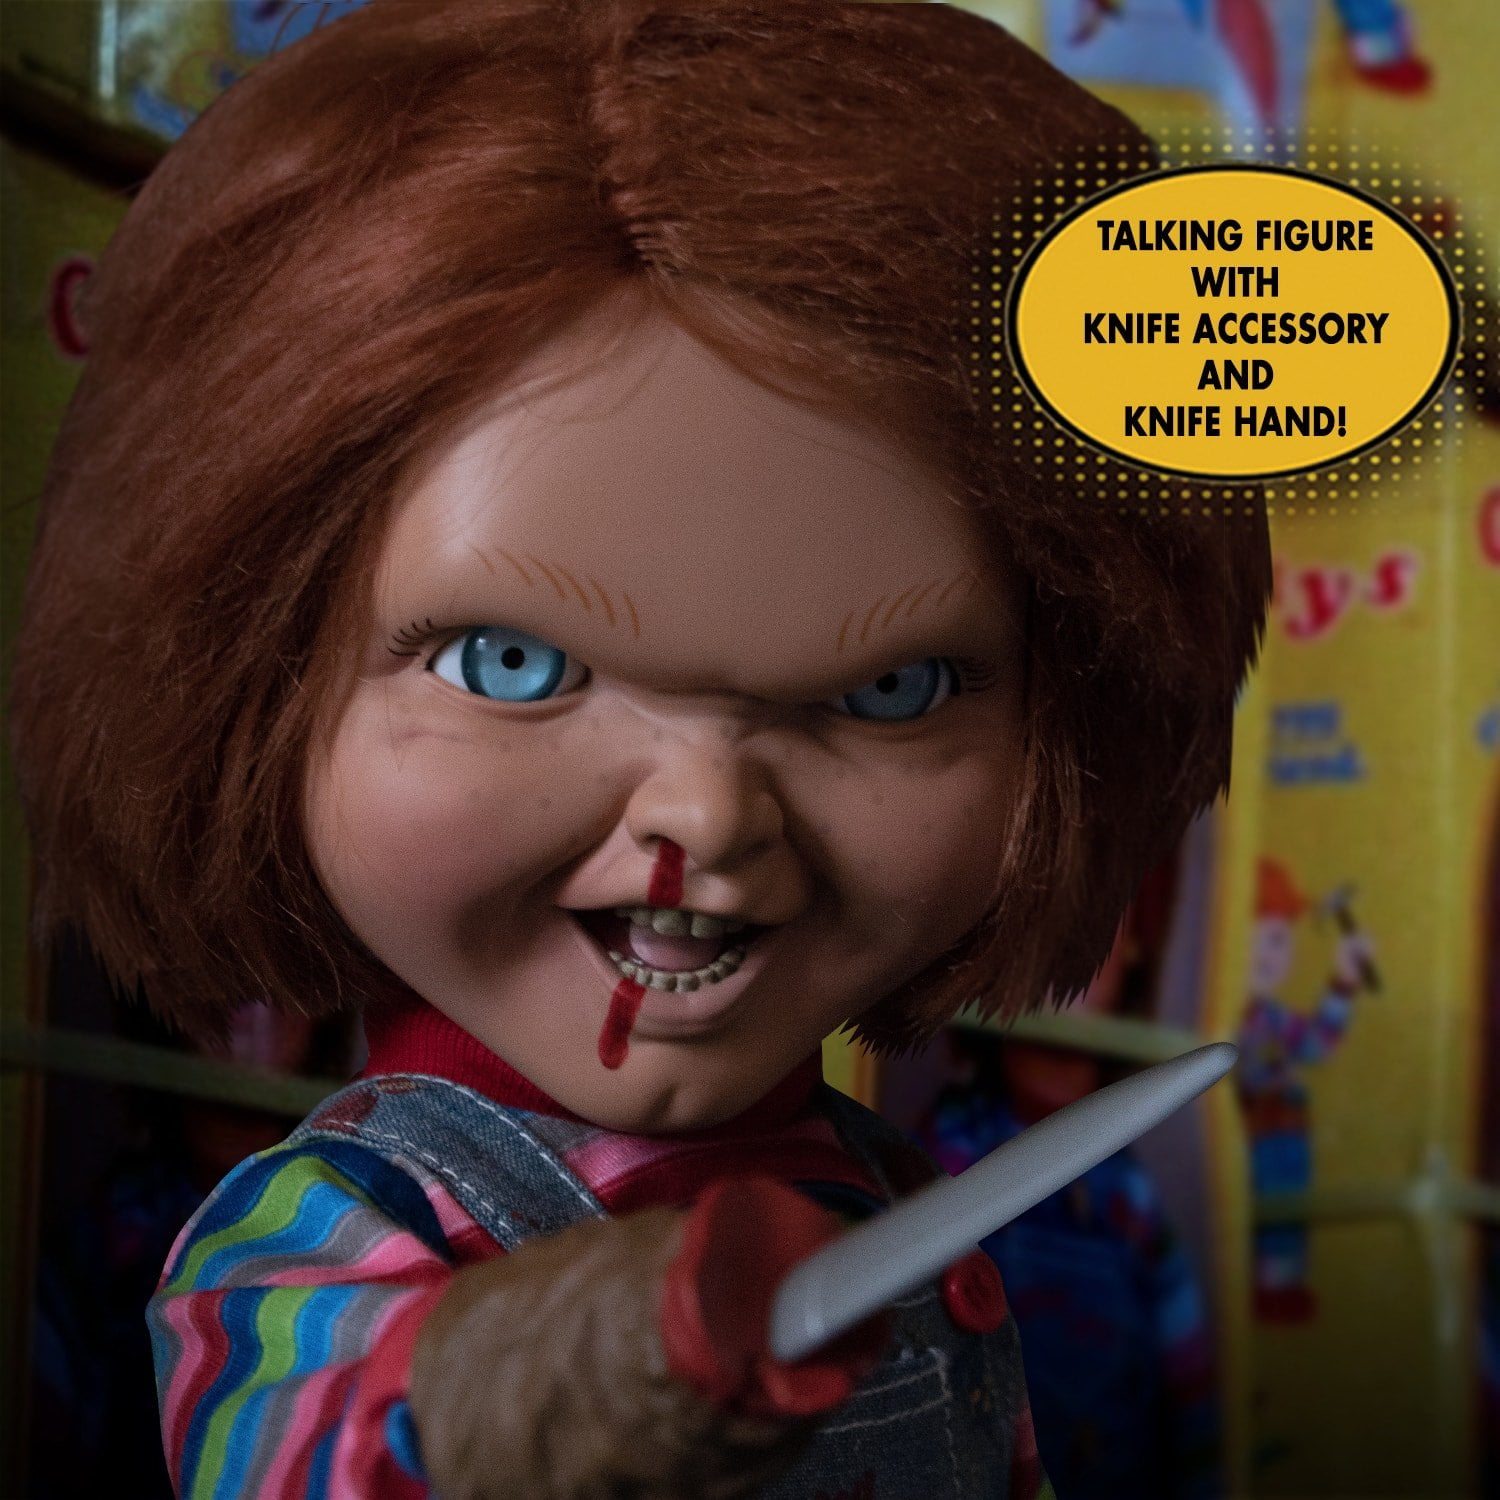 Oi? 'Brinquedo Assassino' pode ganhar filme com Chucky na 2ª